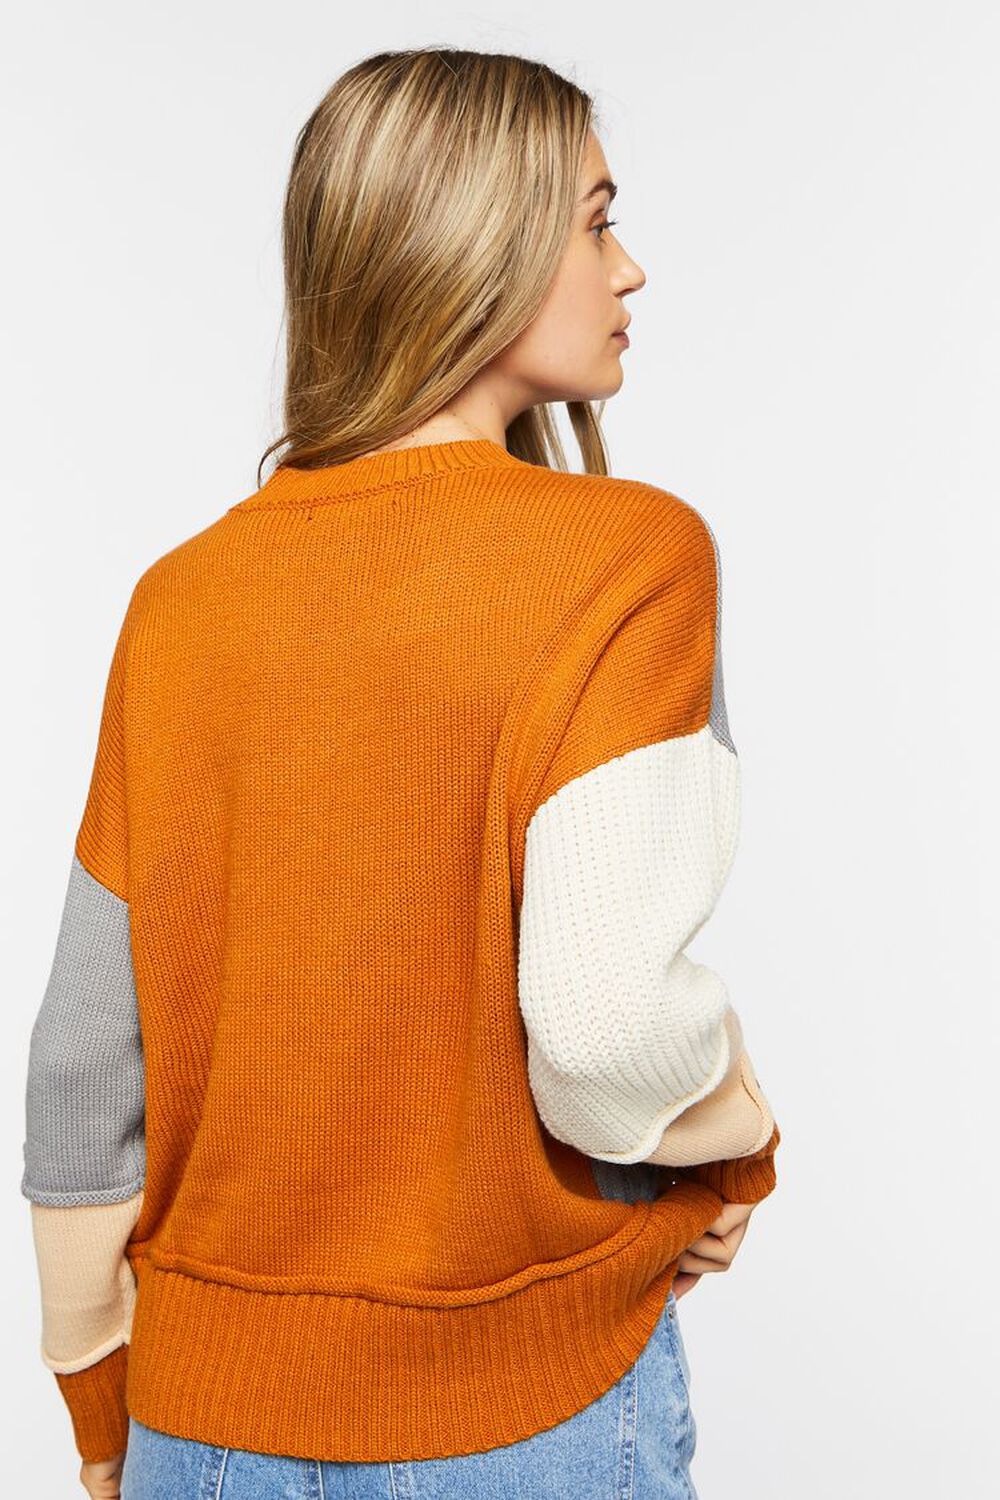 CAMEL/MULTI Colorblock Drop-Sleeve Sweater, image 3